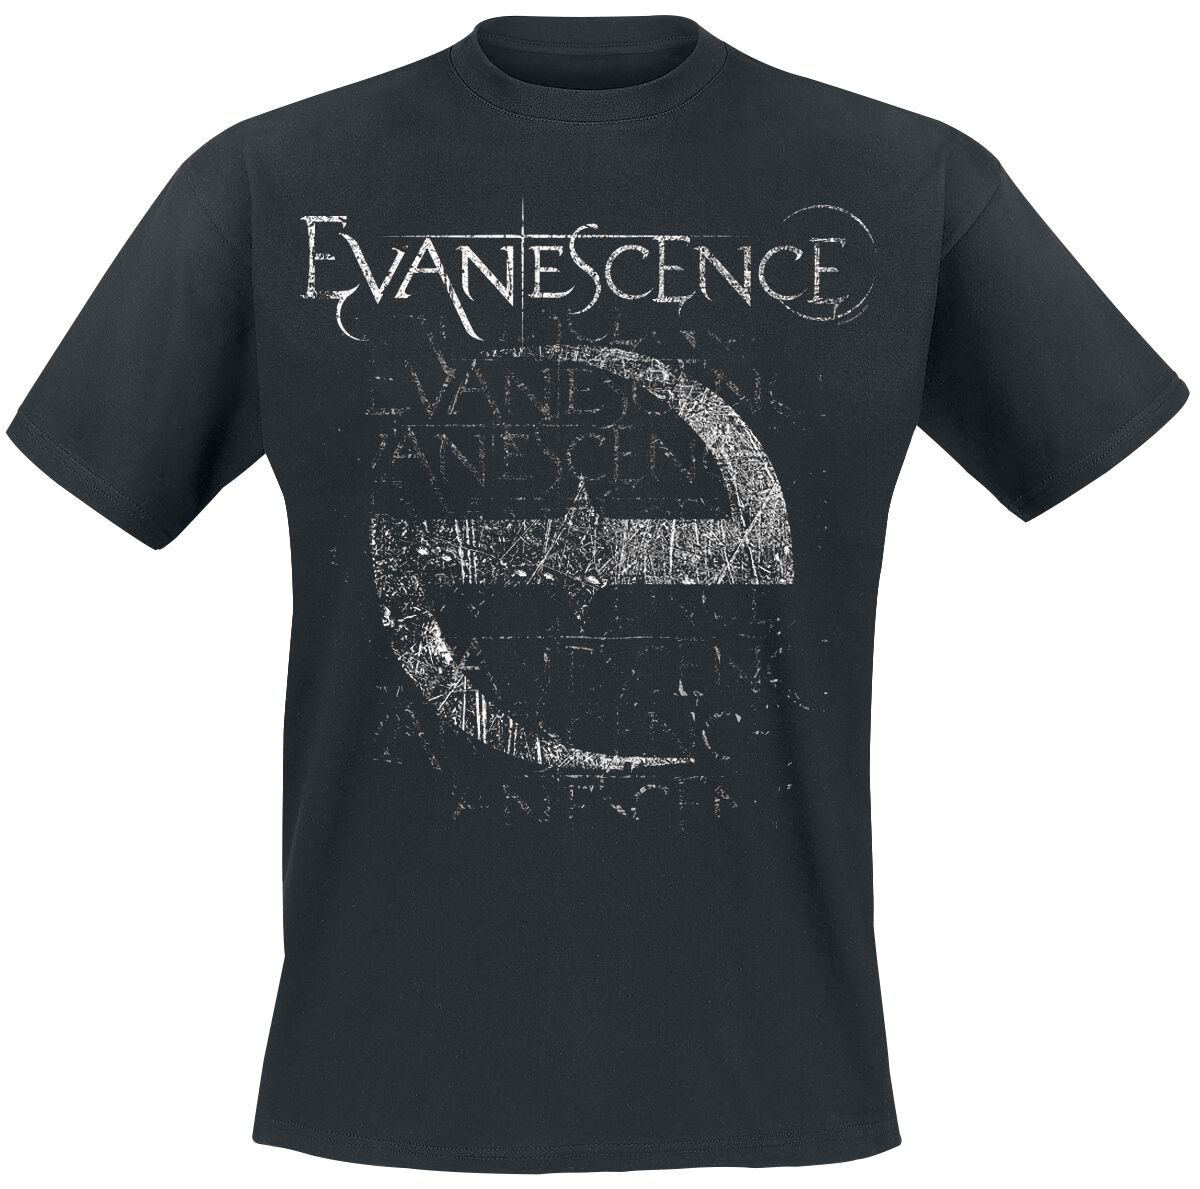 Evanescence T-Shirt - Distressed Stamped - M bis XXL - für Männer - Größe L - schwarz  - Lizenziertes Merchandise!